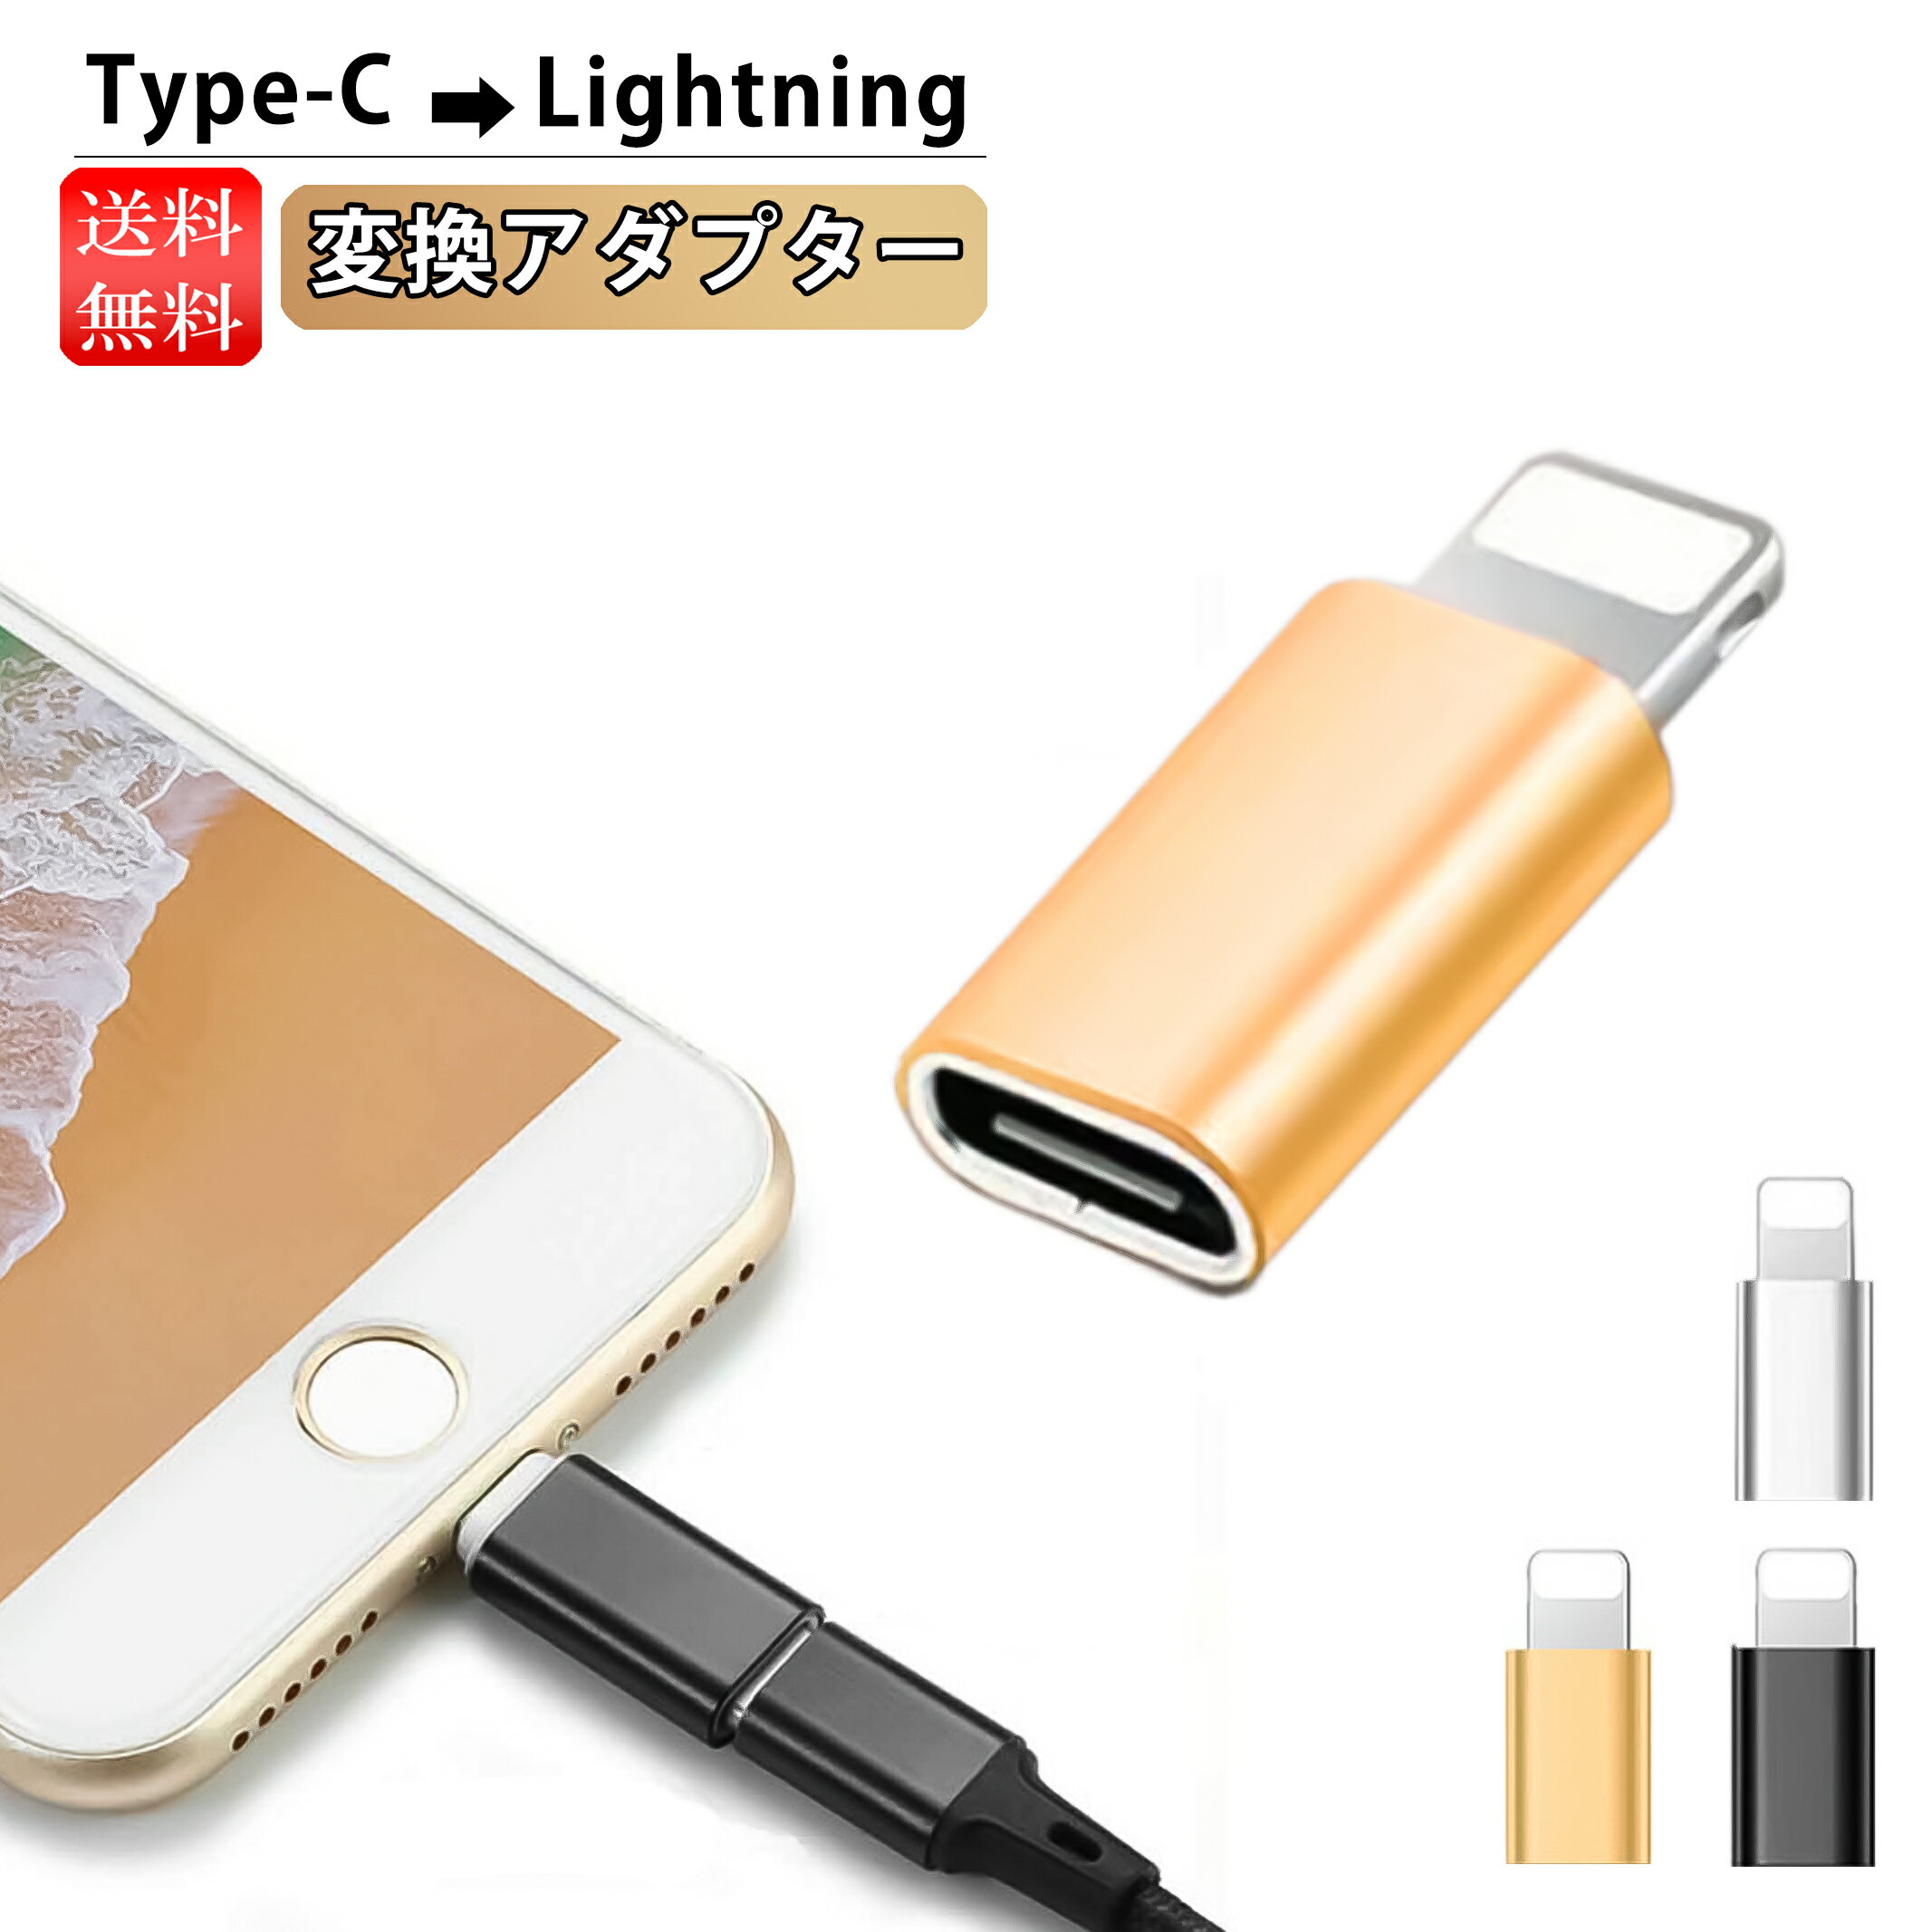 変換アダプター Type-C Lightningケーブル 変換 タイプC iPhone type-Cからライトニング 充電 変換アダプタ iPhone 充電